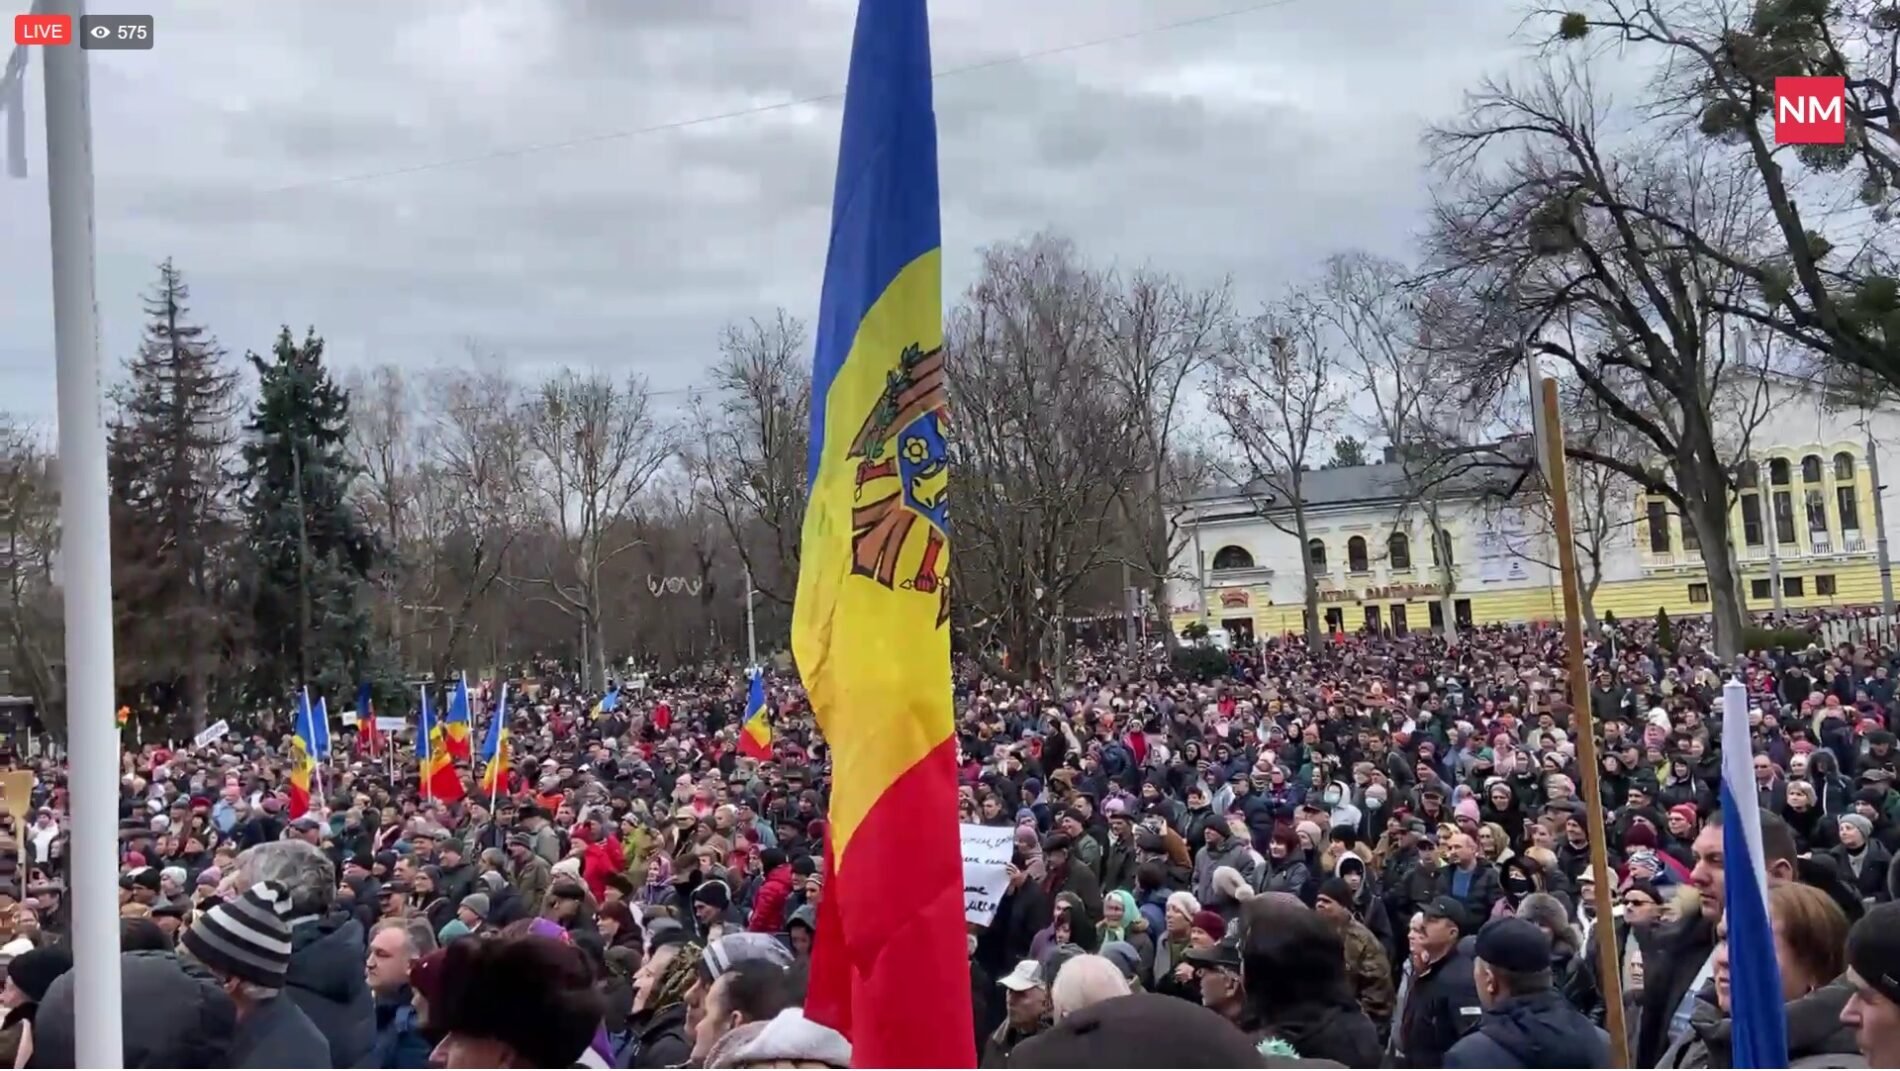  VIDEO Protestele antiguvernamentale de la Chişinău s-au încheiat după trei ore de tensiuni. Reacţiile puterii